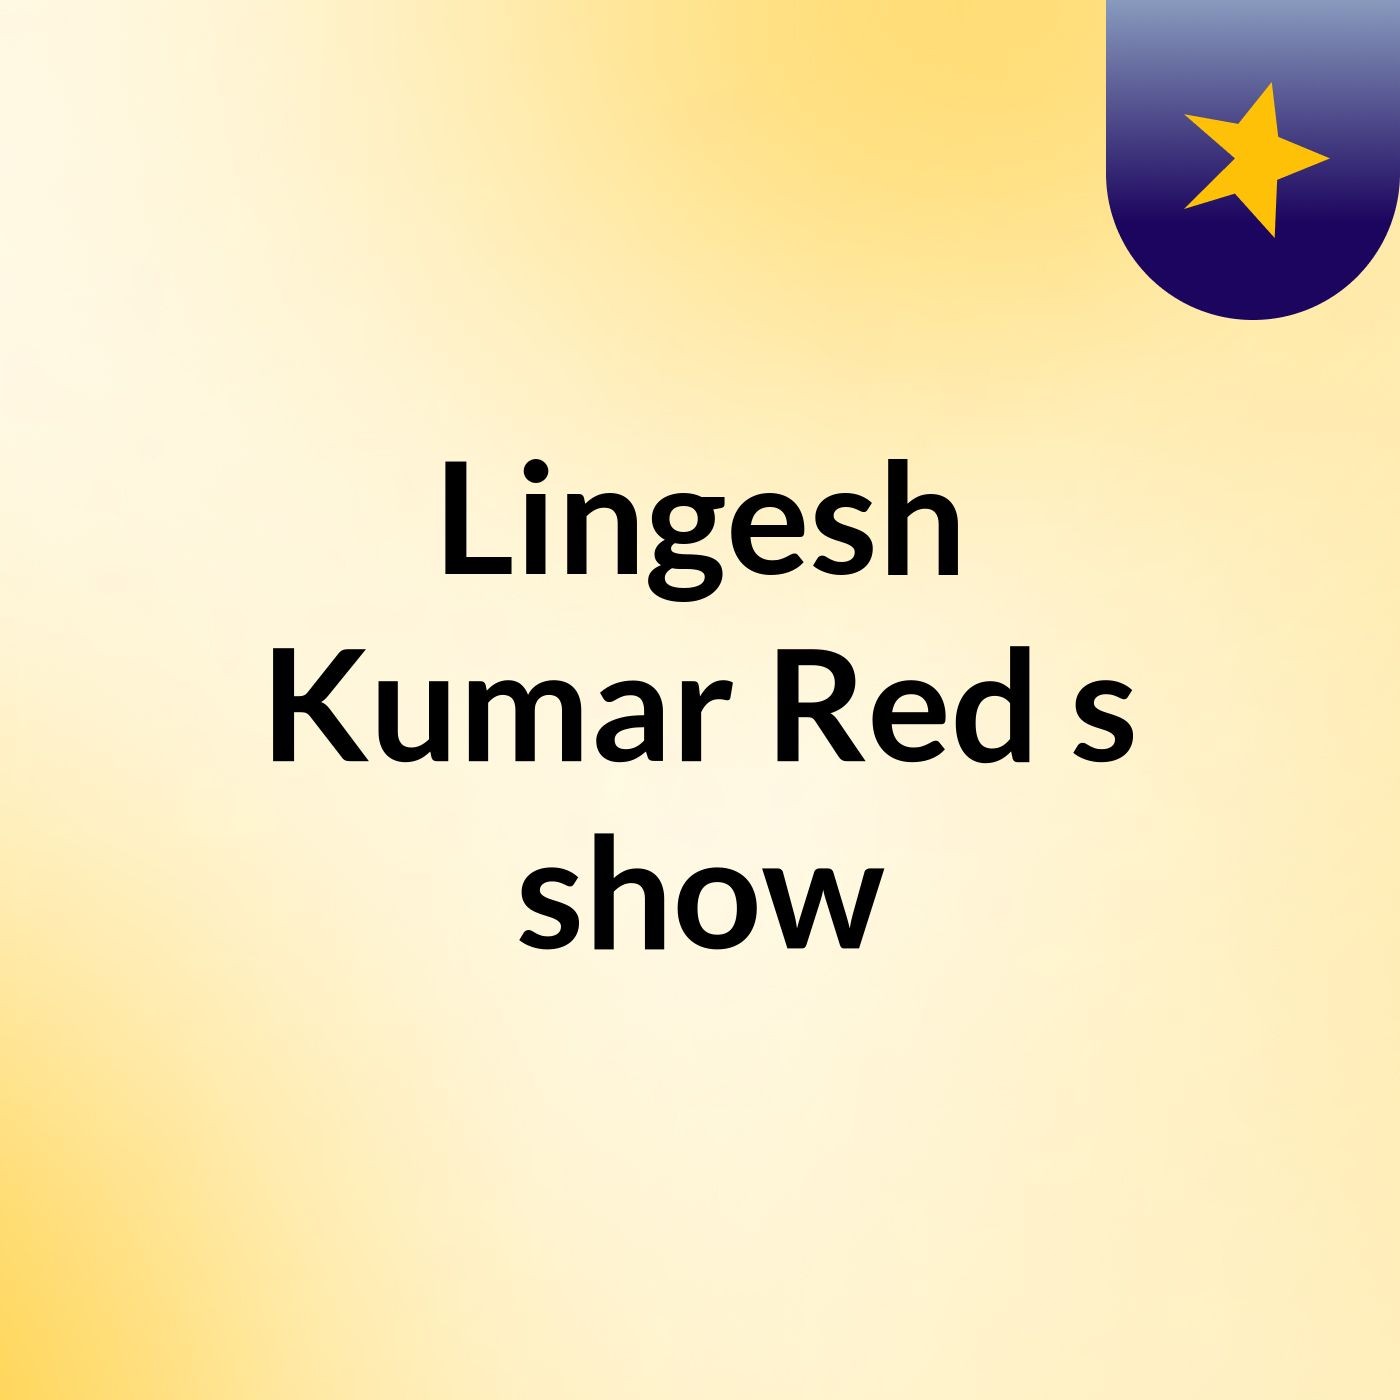 Lingesh Kumar Red's show